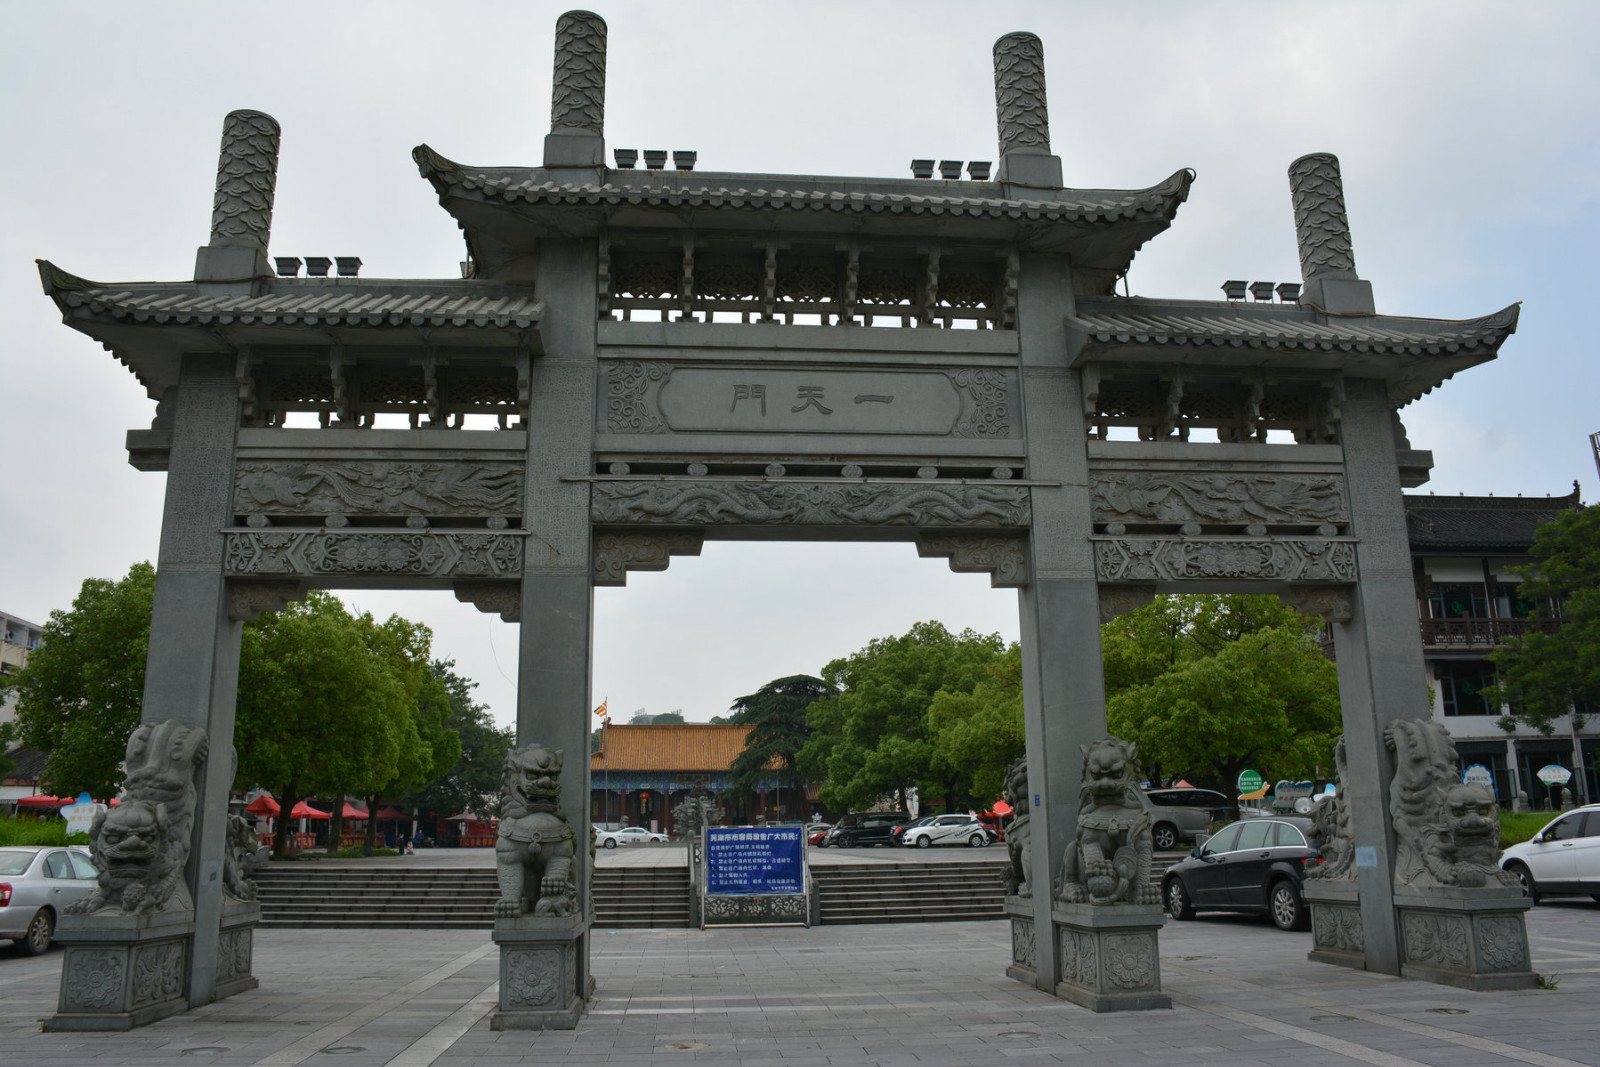          广济寺